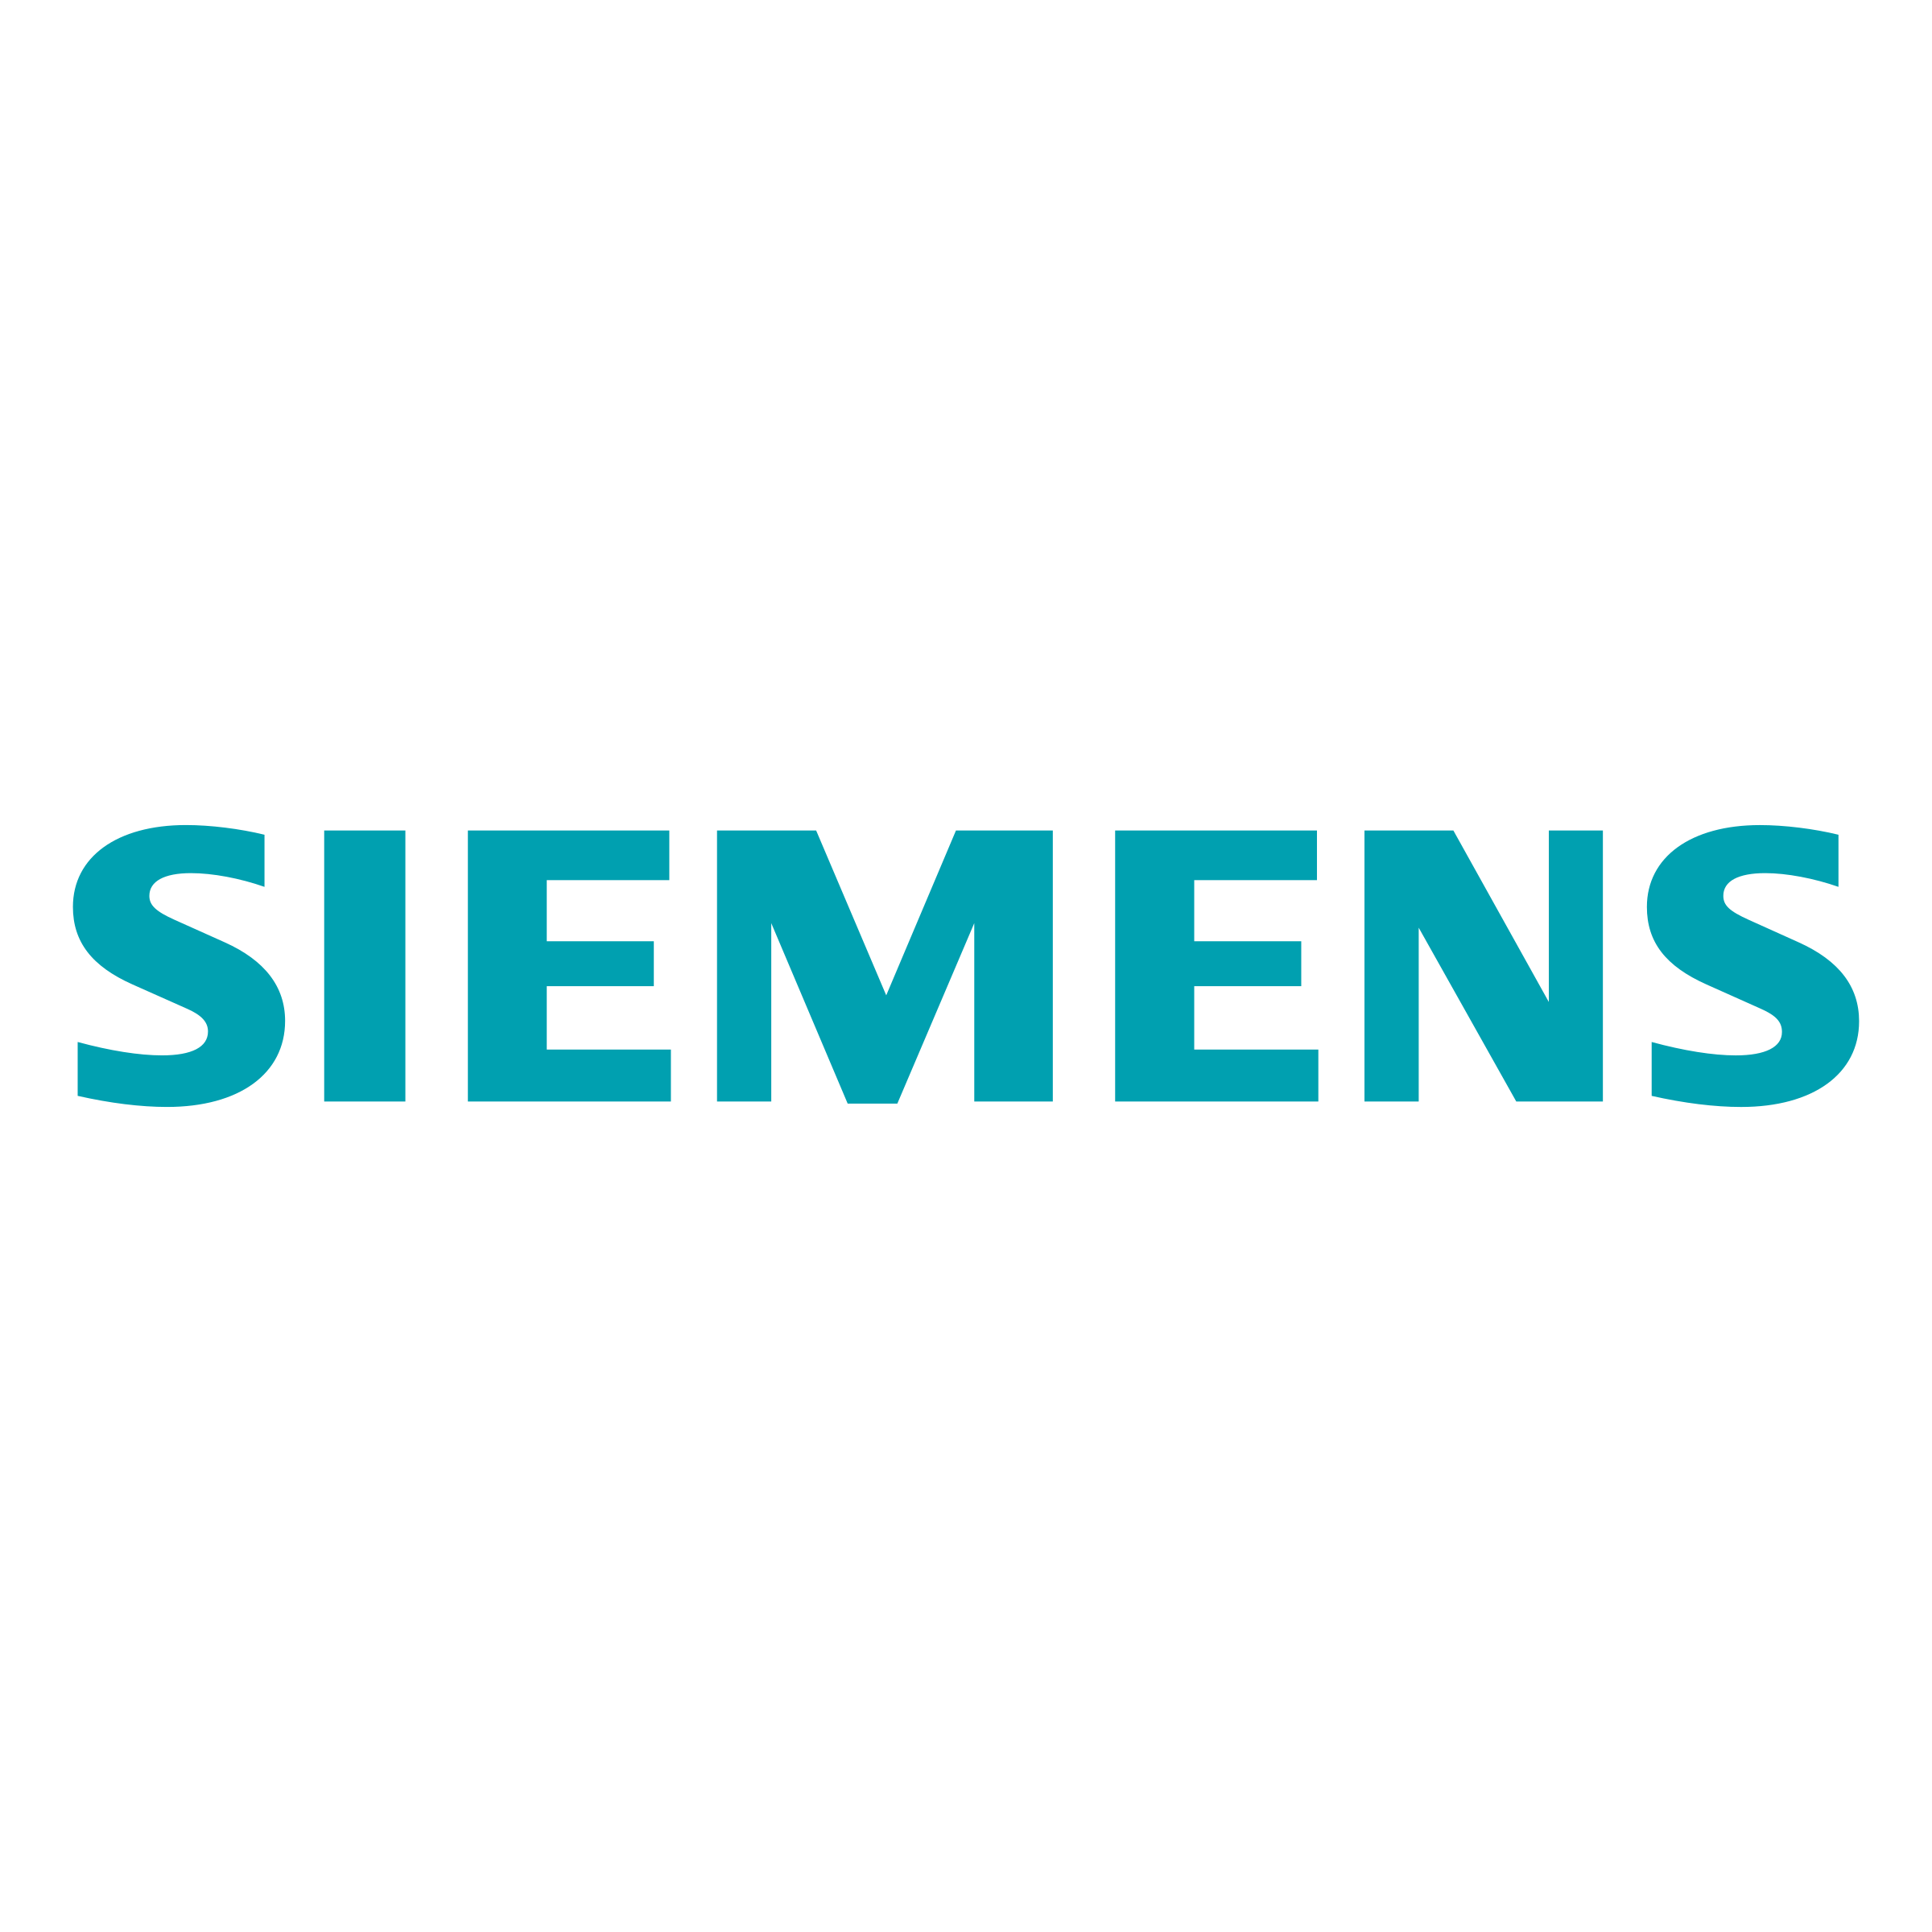 Siemens Logo - Siemens Behind